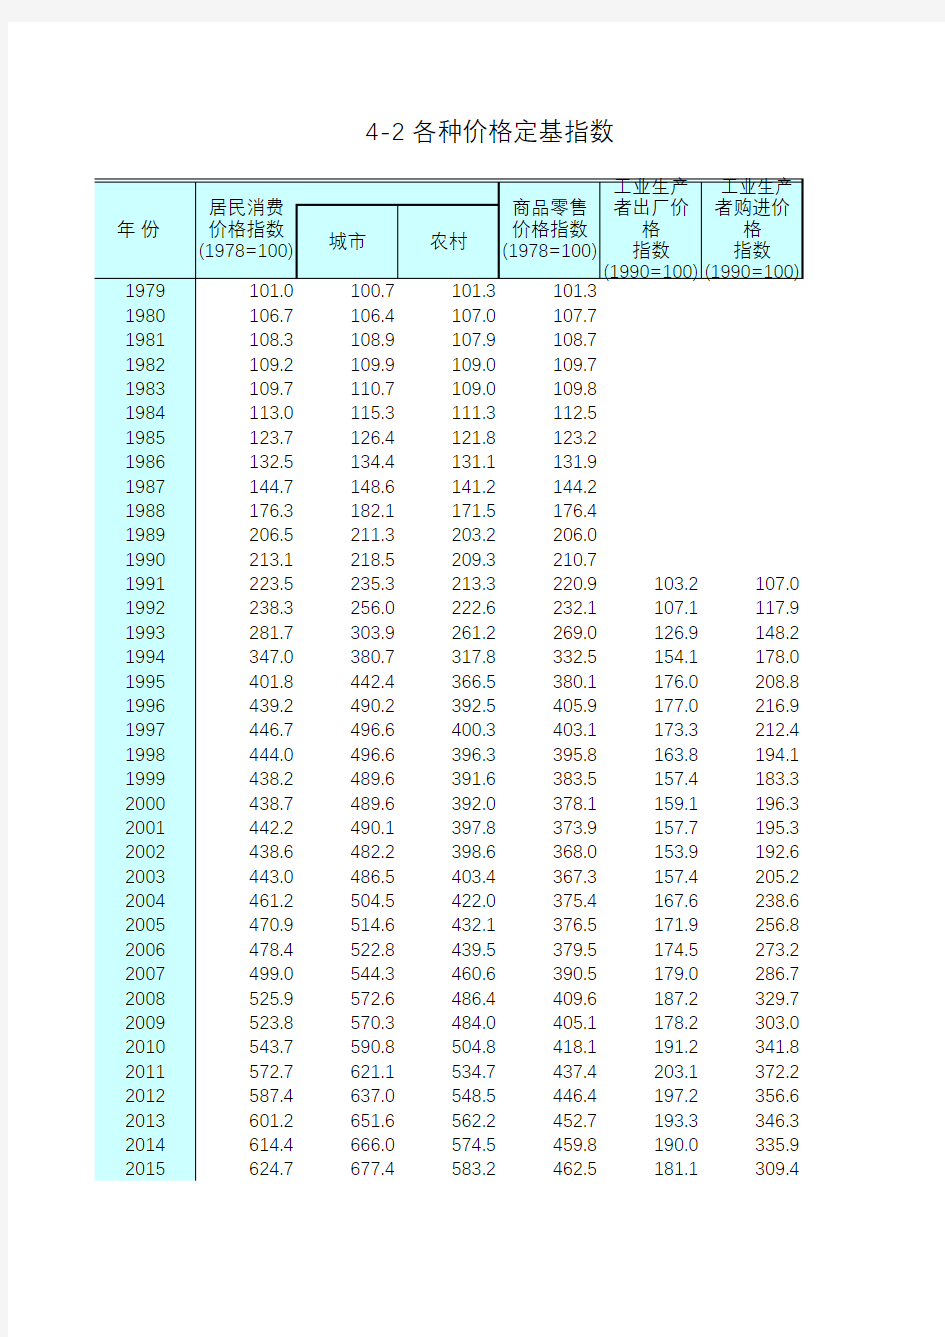 江苏统计年鉴2018社会经济发展指标：各种价格定基指数